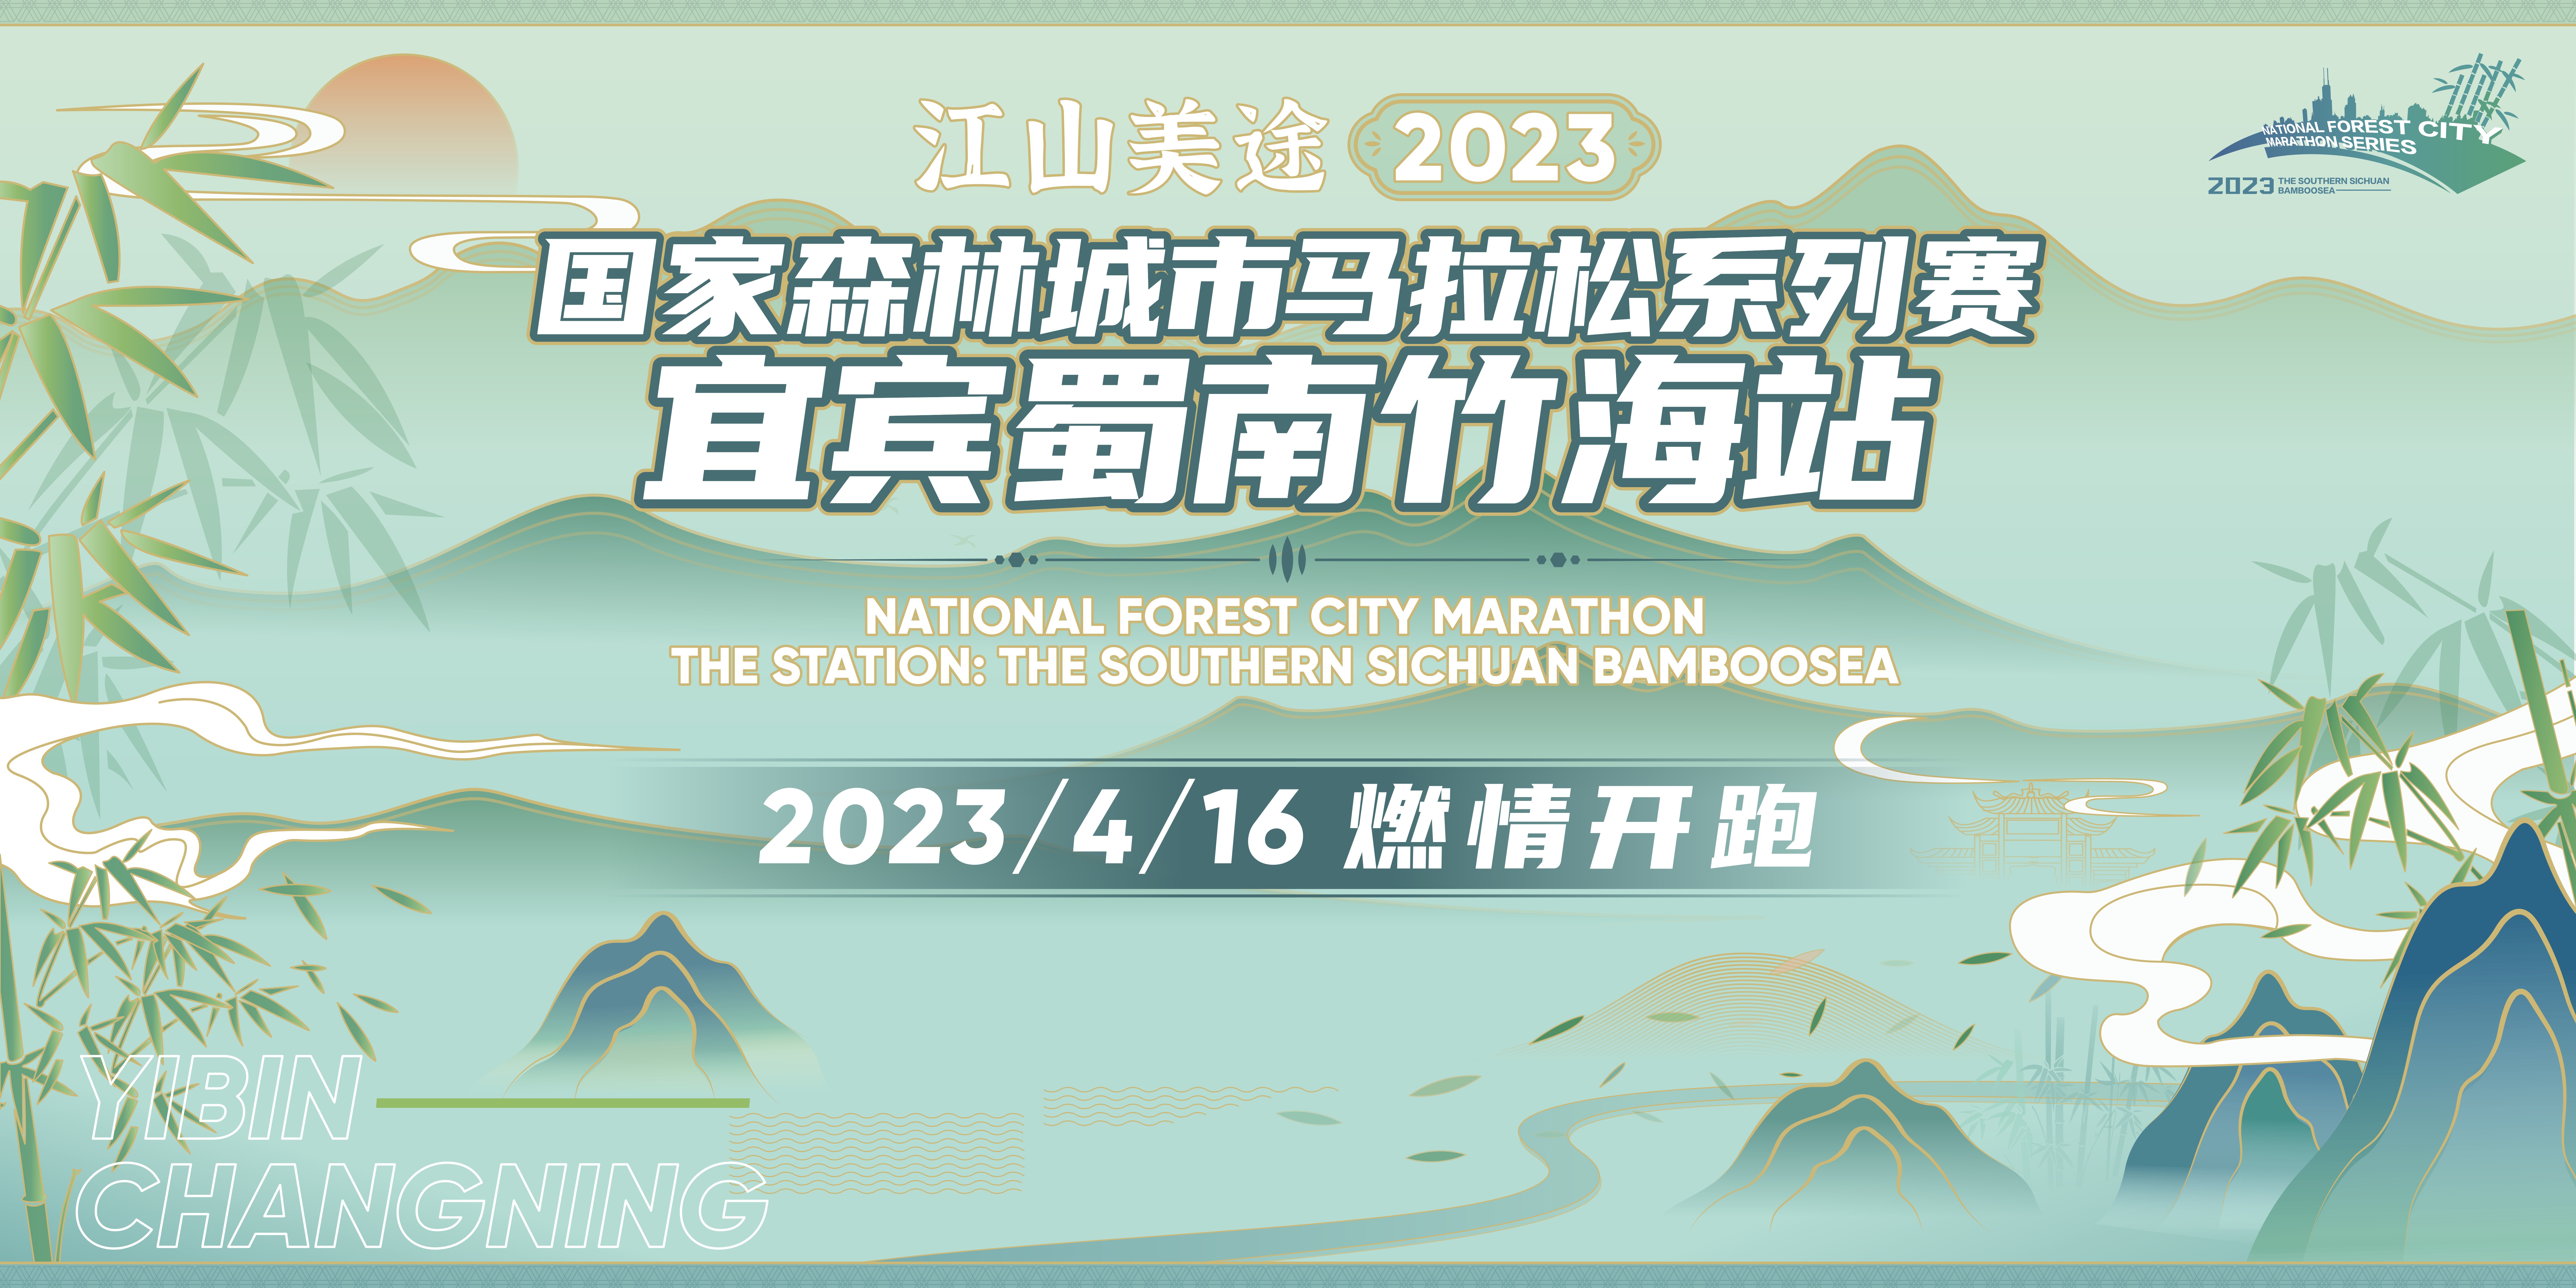 江山美途·2023国家森林城市马拉松系列赛 宜宾蜀南竹海站